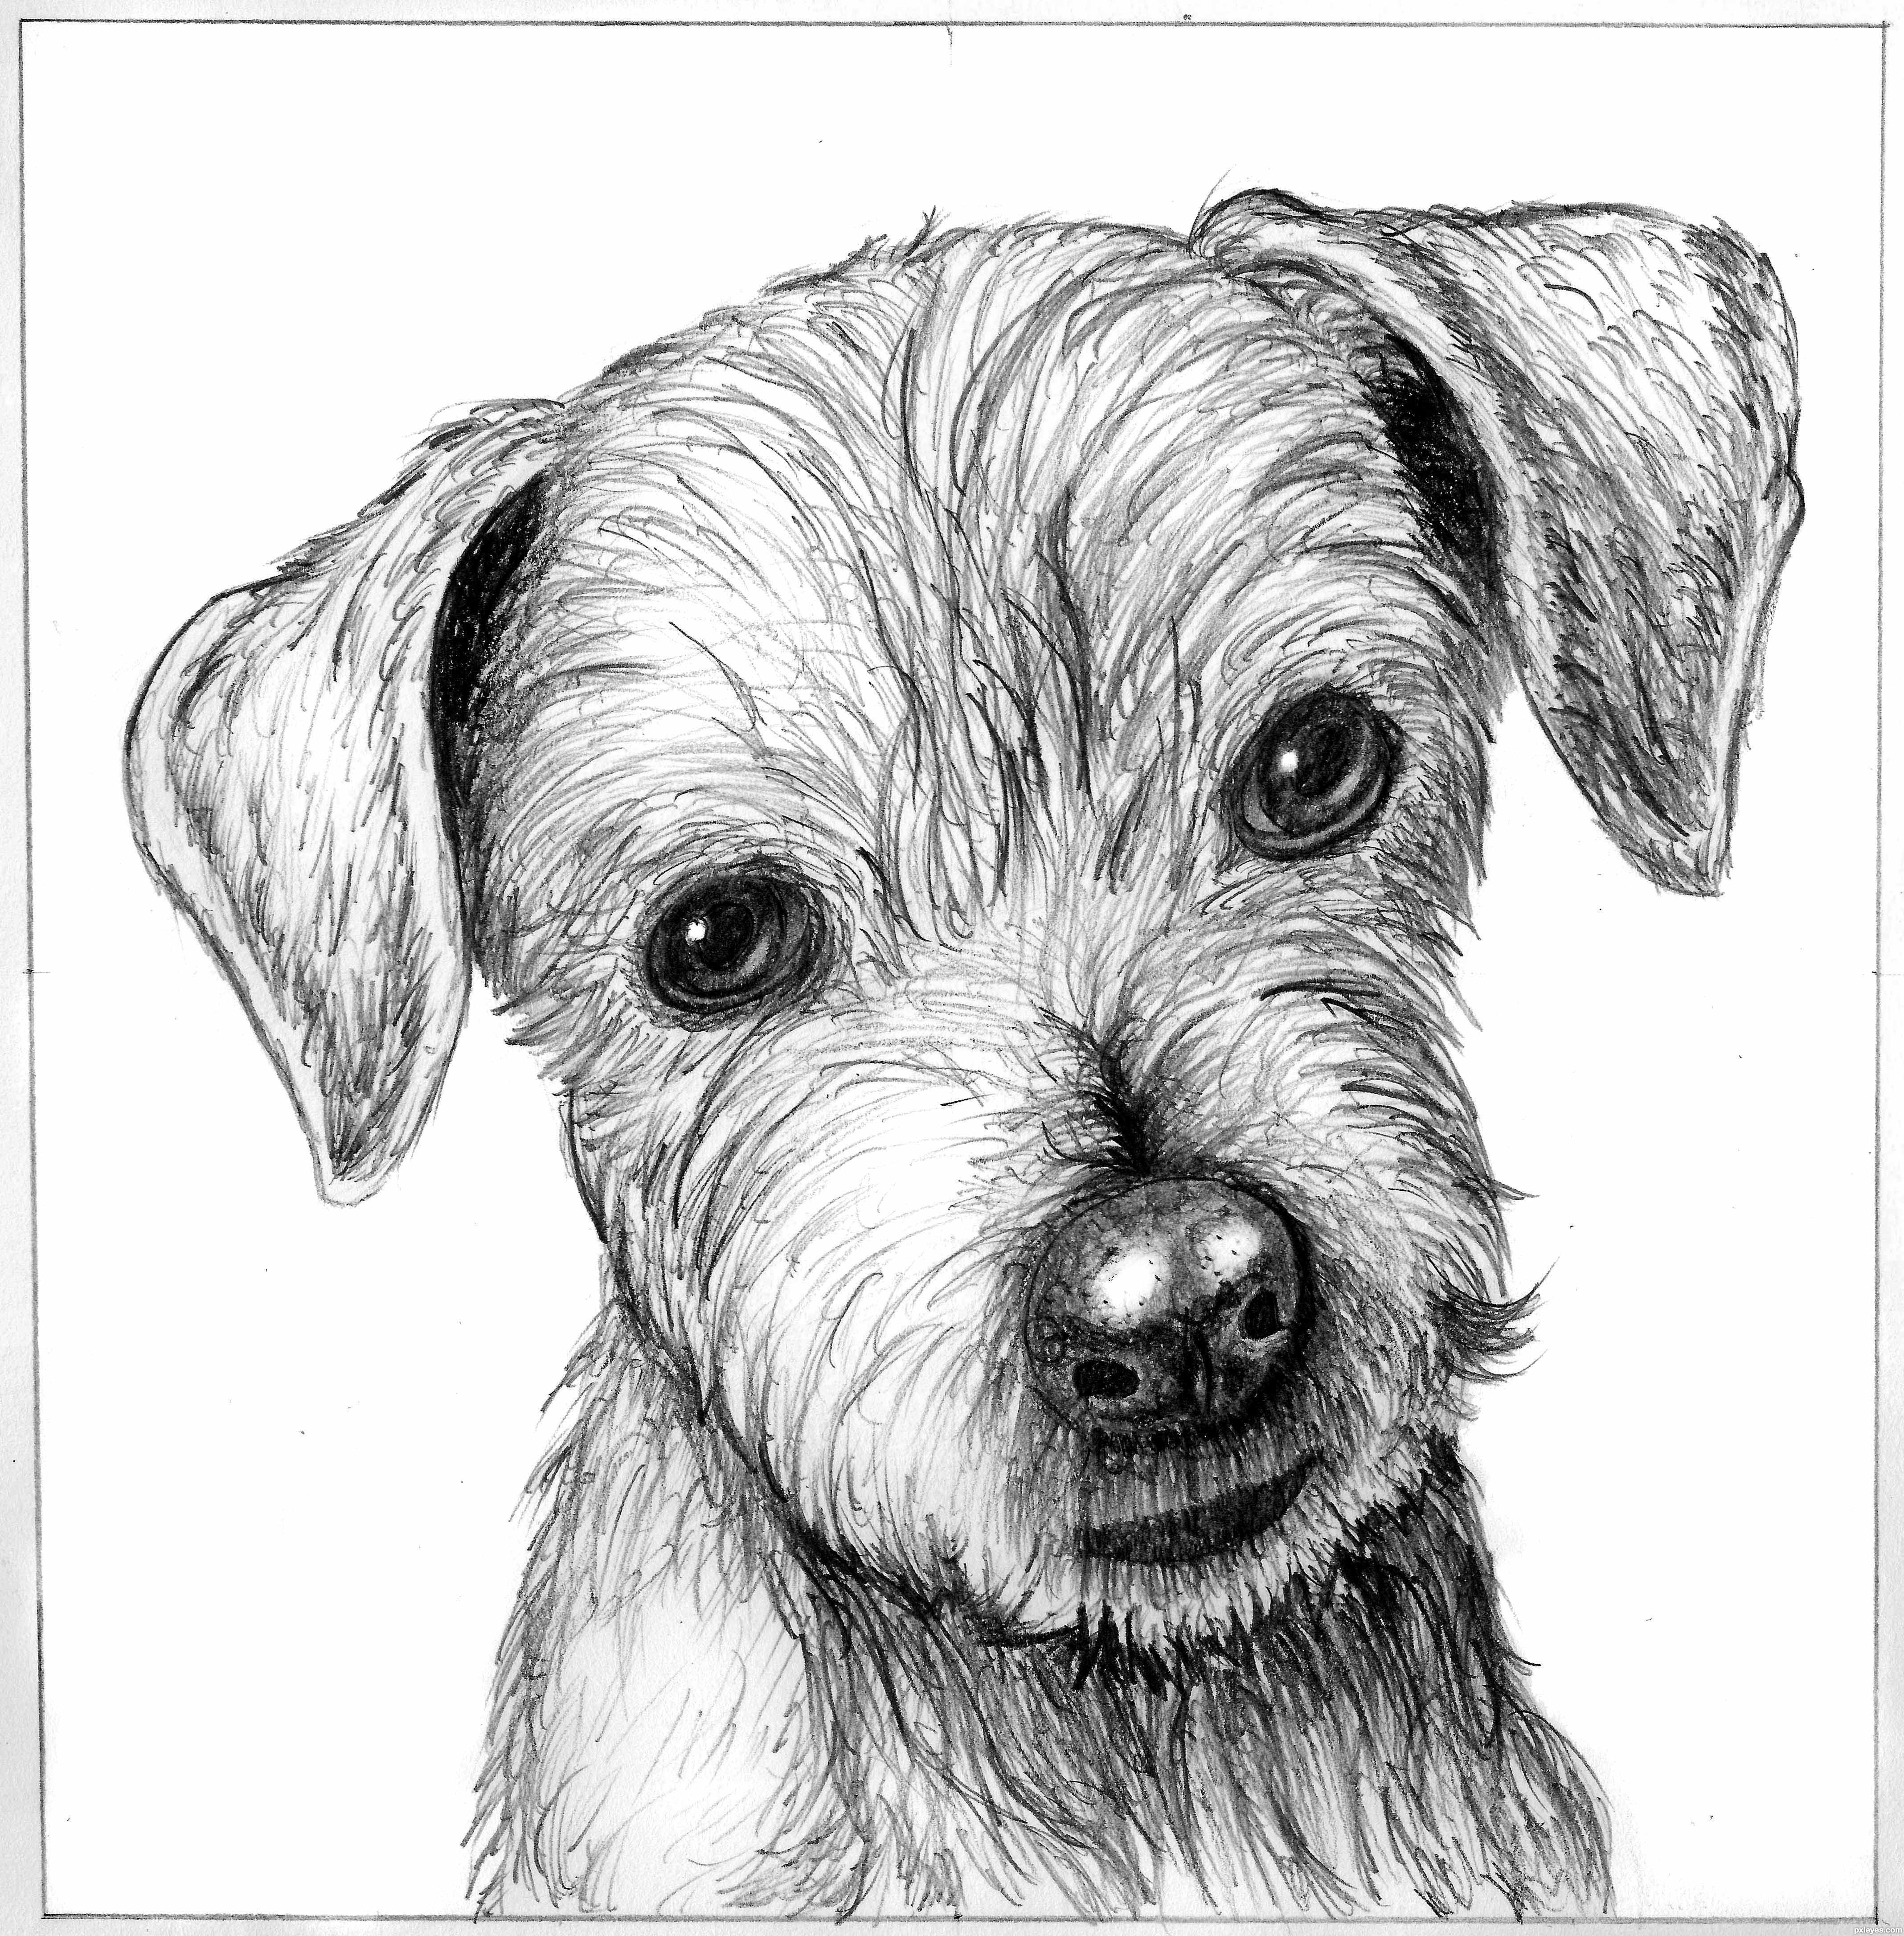 Sketch of a cute puppy